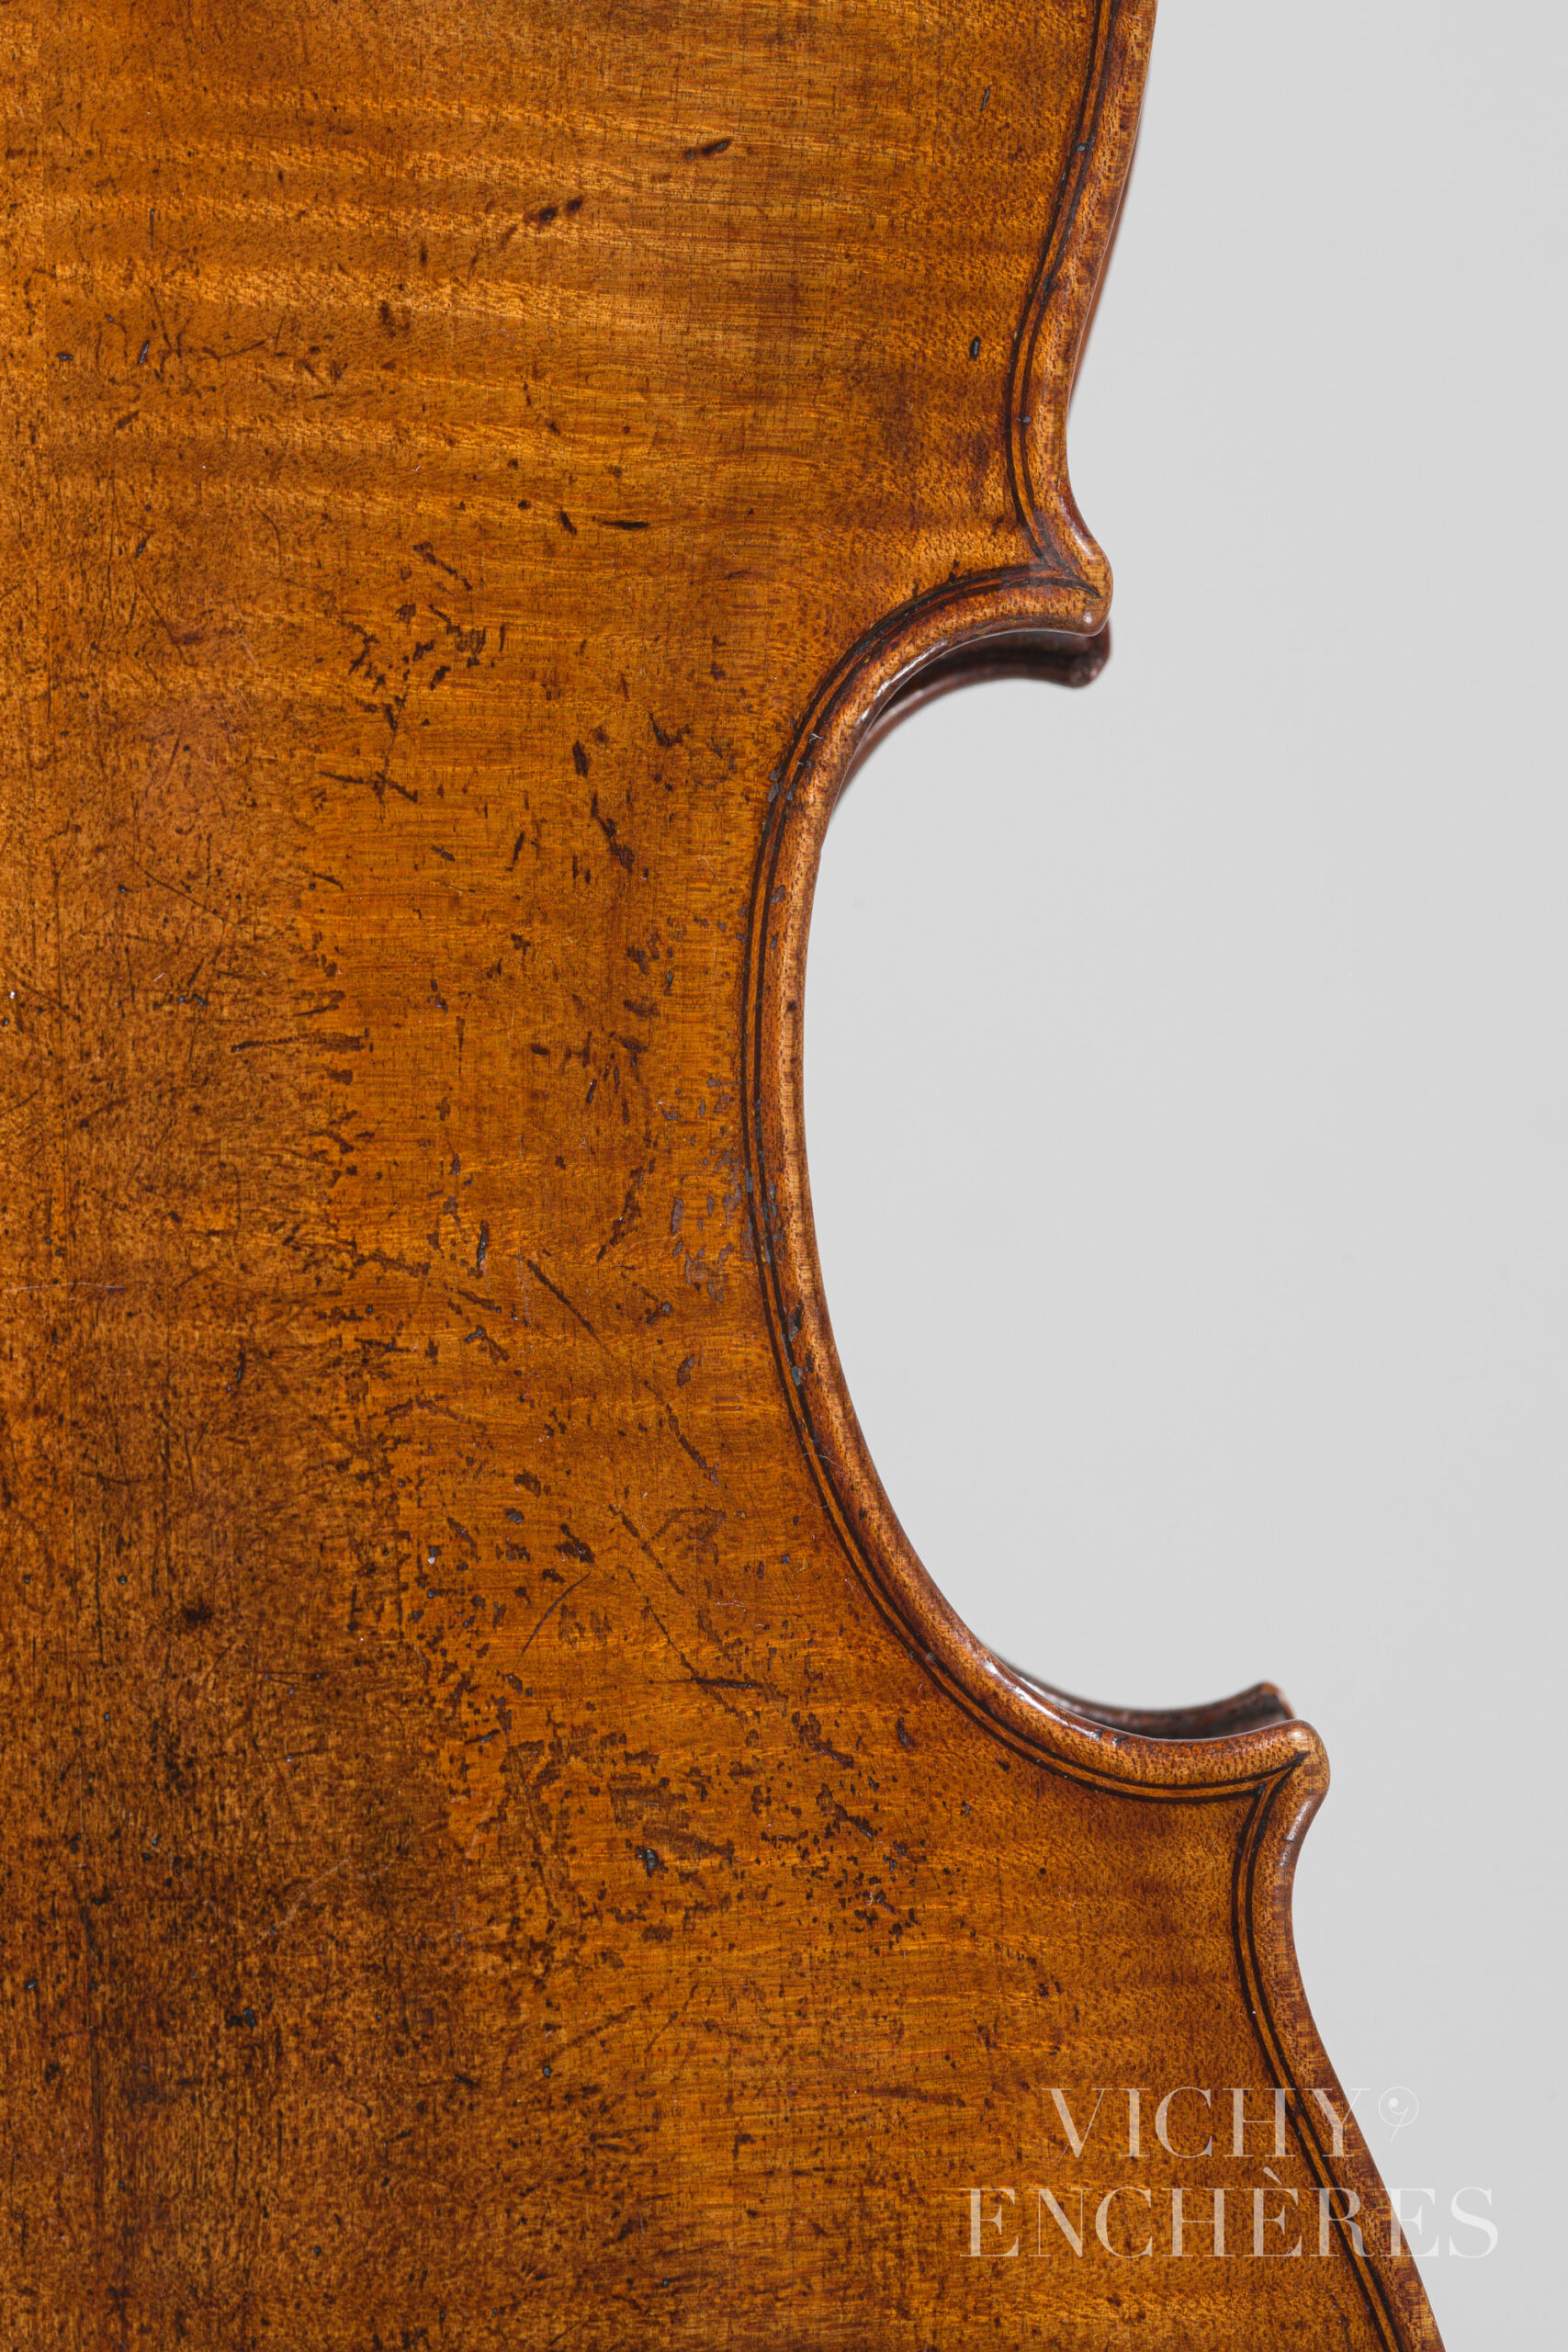 Violon de Lorenzo CARCASSI Instrument mis en vente par Vichy Enchères le 1er décembre 2022 © Christophe Darbelet